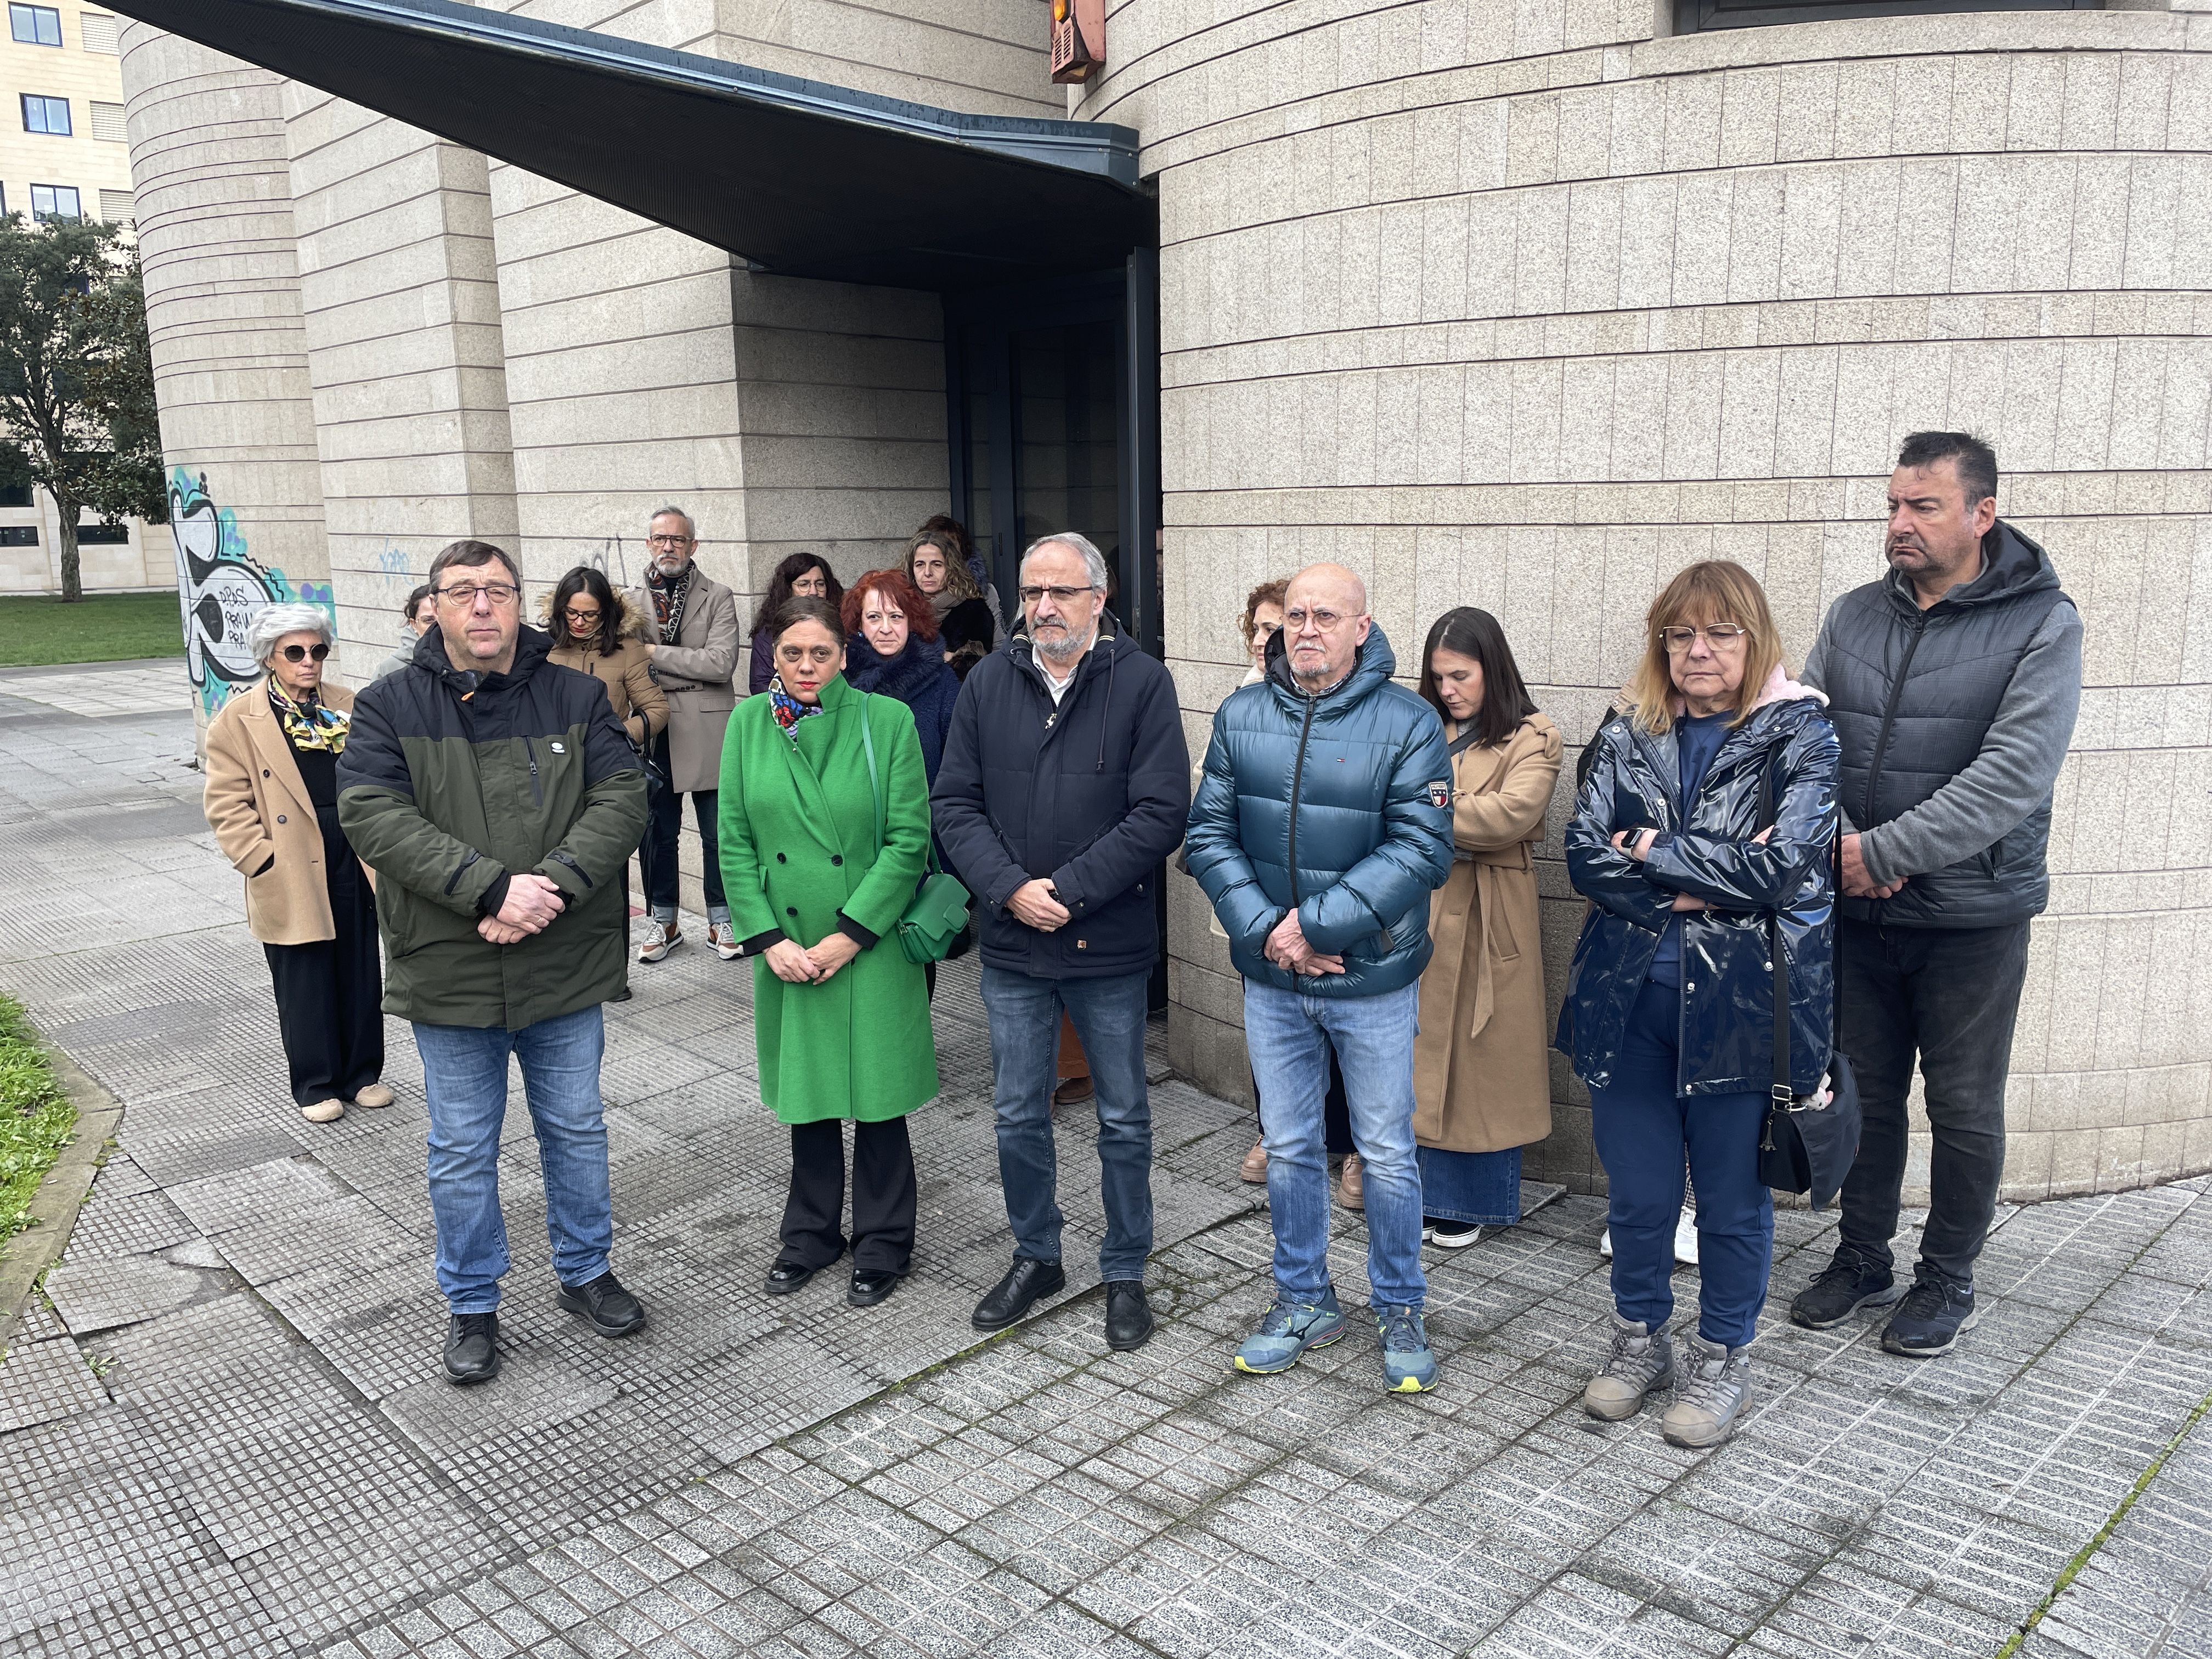 Minuto de silencio frente a la sede del Consejo Comarcal en Ponferrada. | Javier Fernández